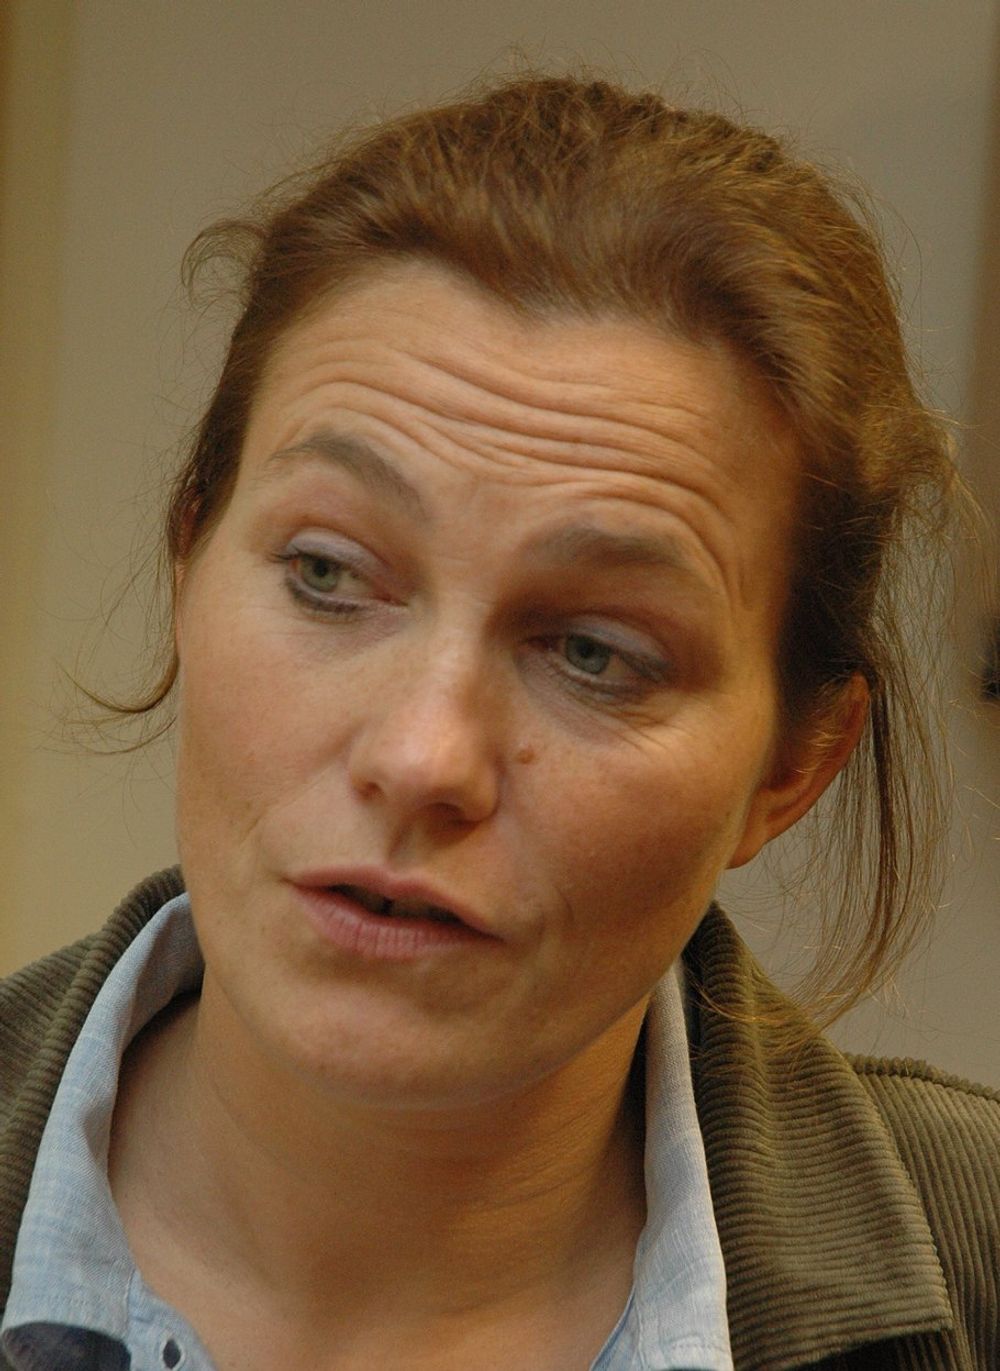 I TILLEGG: HyWind kommer i tillegg til annen kraftproduksjon, sier Alexandra Bech Gjørv.